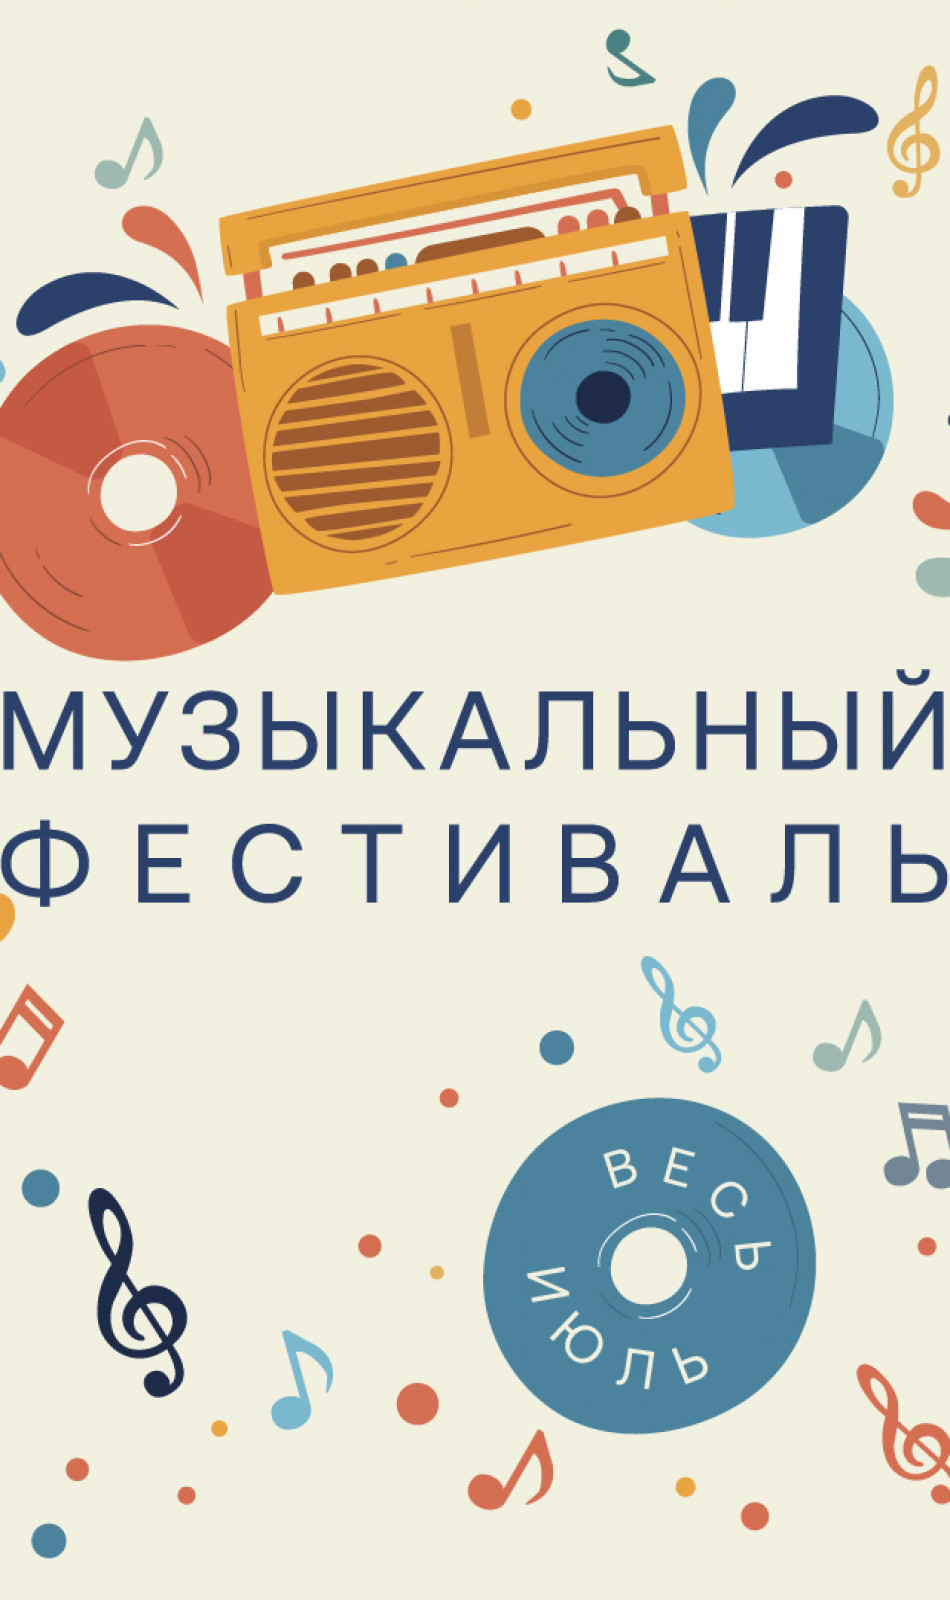 Music festival in Arkhangelskoye Outlet!